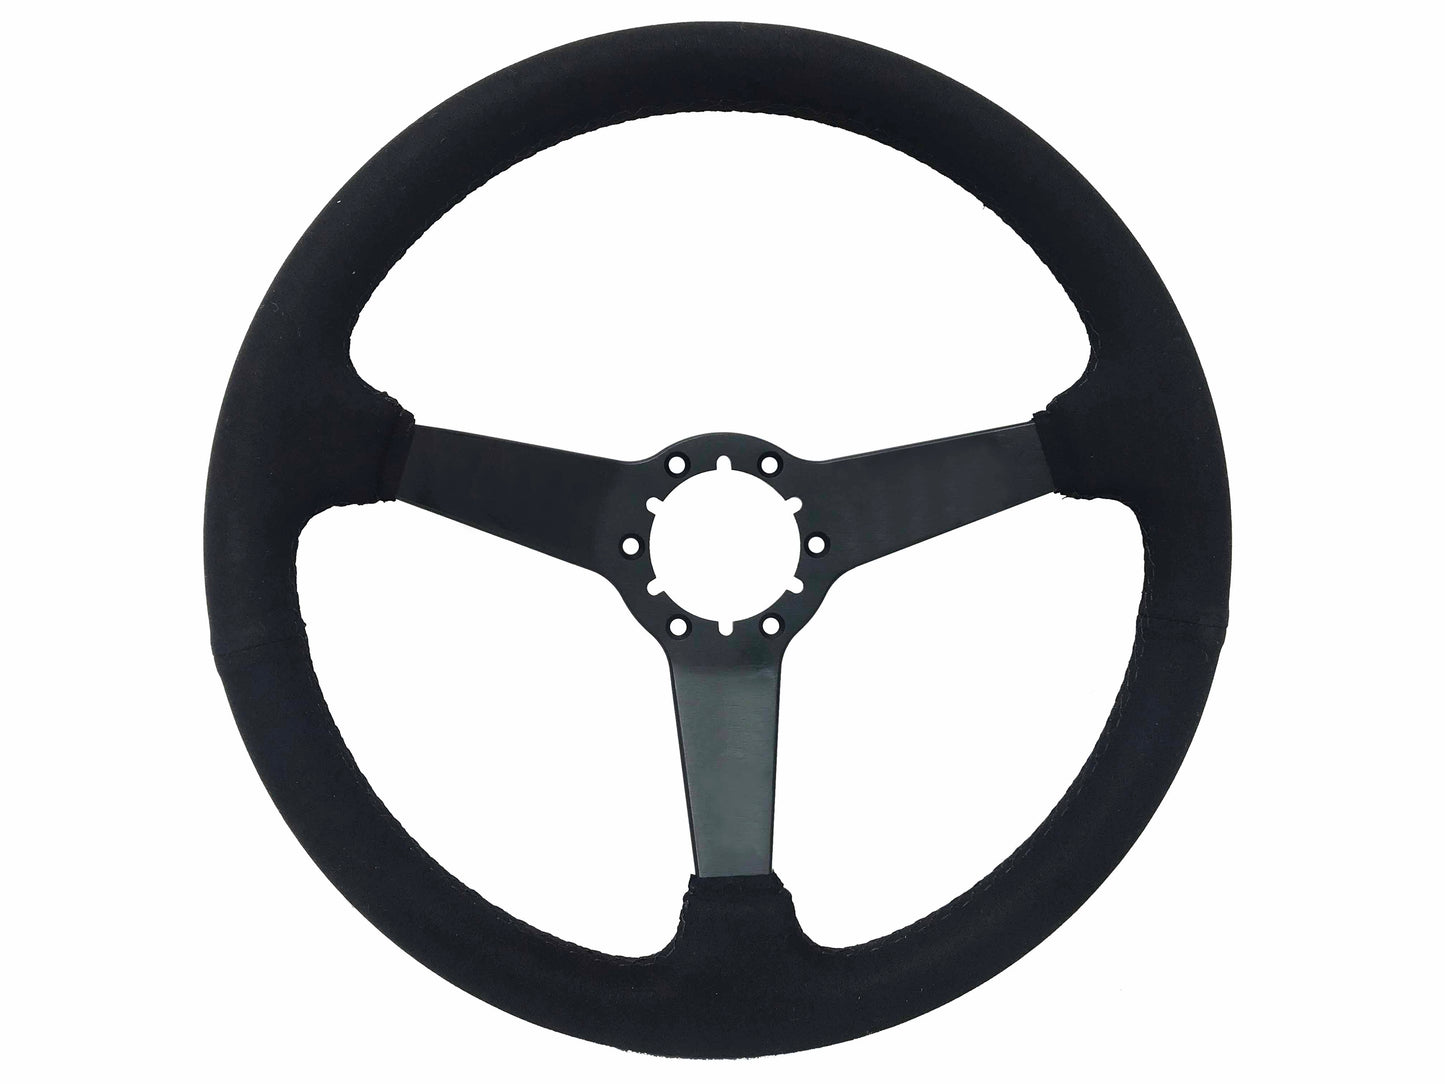 VSW S6 Steering Wheel | Ultralux Suede Black Solid Spoke | ST3582BLK